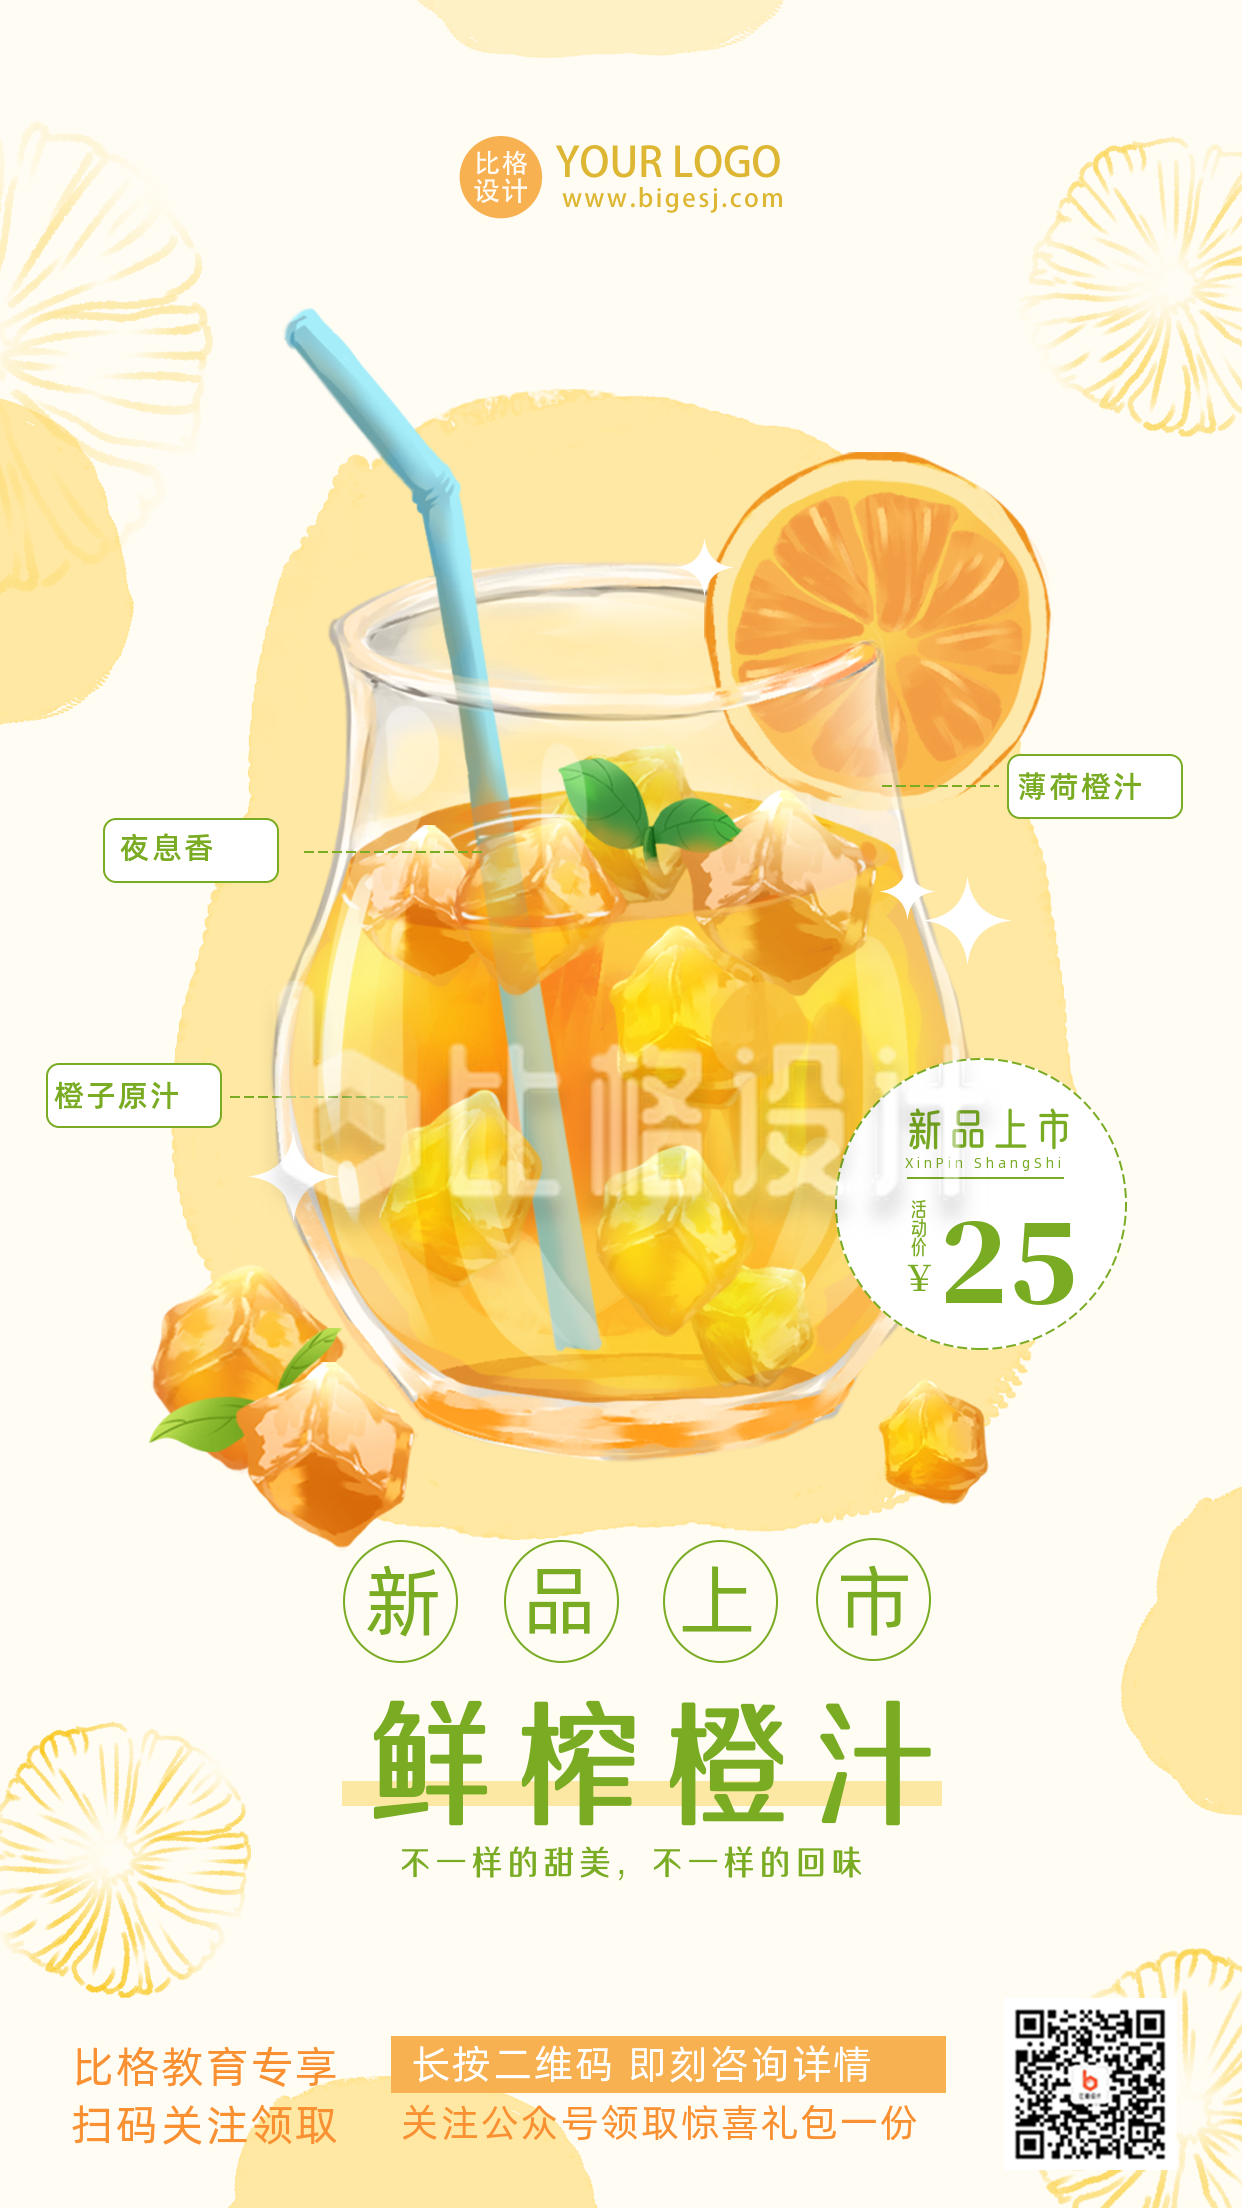 奶茶饮品夏天新品上市促销优惠活动主题手机海报